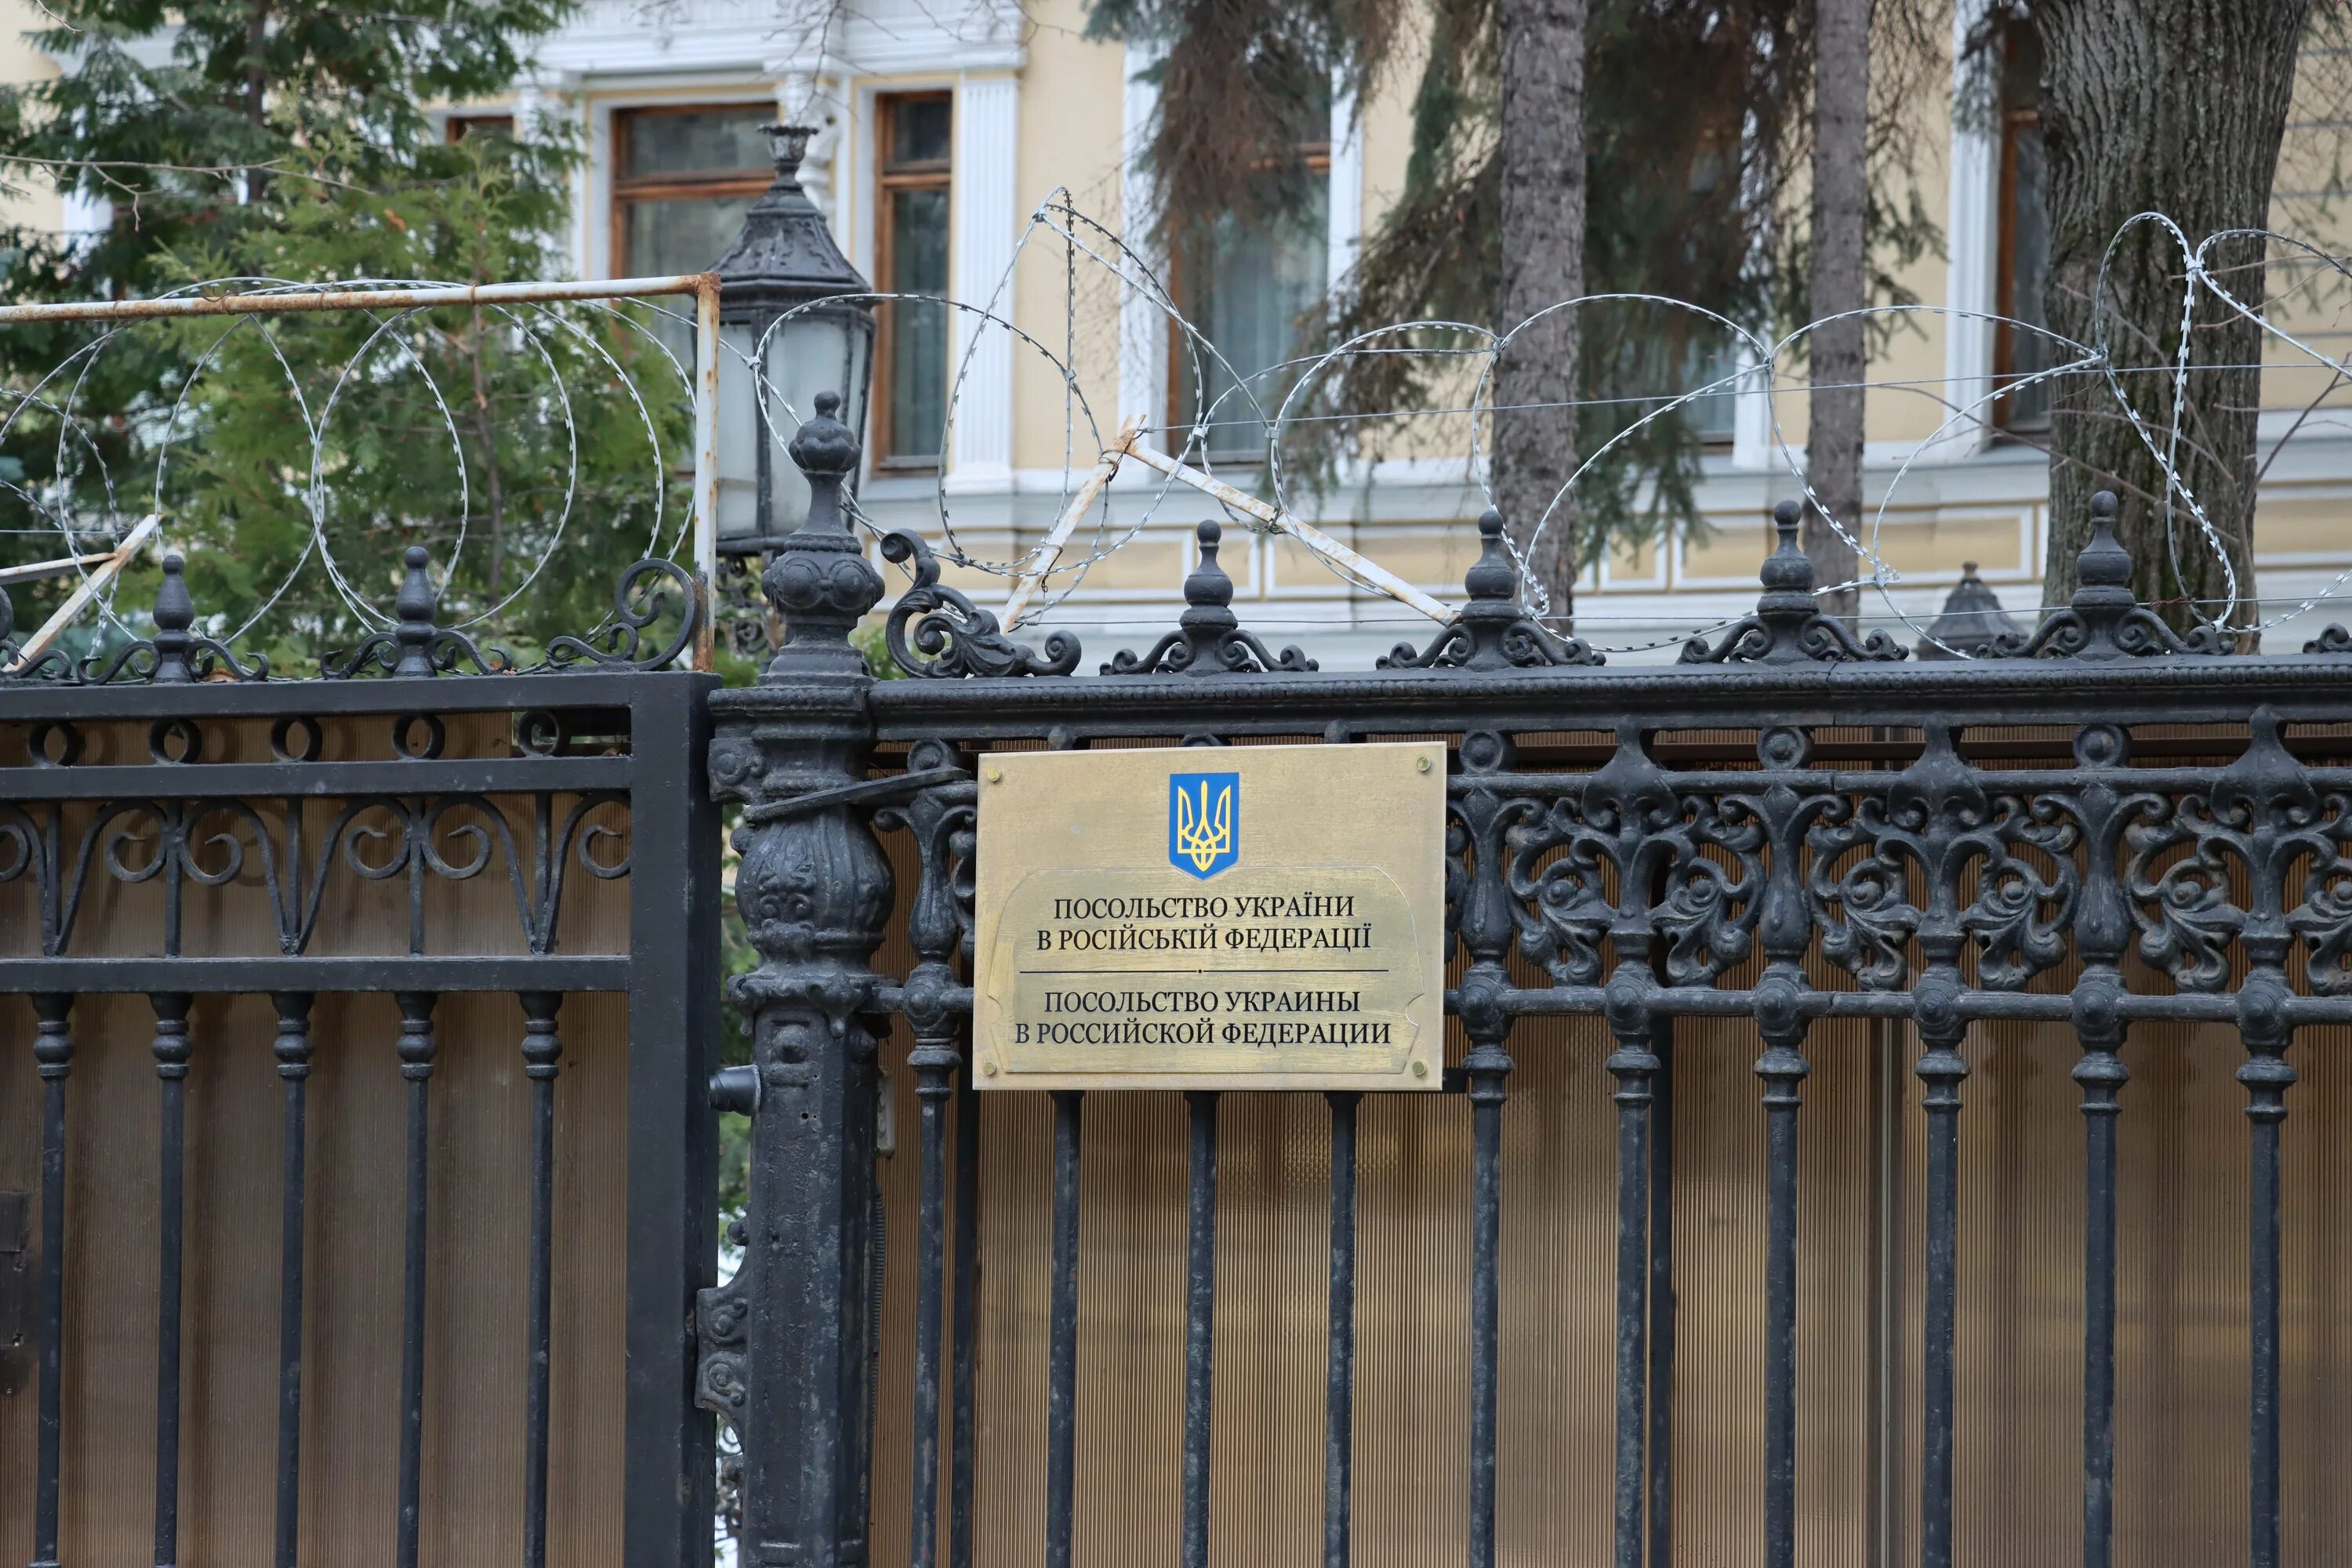 Где посольство украины. Посольство Украины в Москве. Посольство Украины в Ташкенте. Посольство Украины в Москве памятник. Флаг Украины на посольстве в Москве.